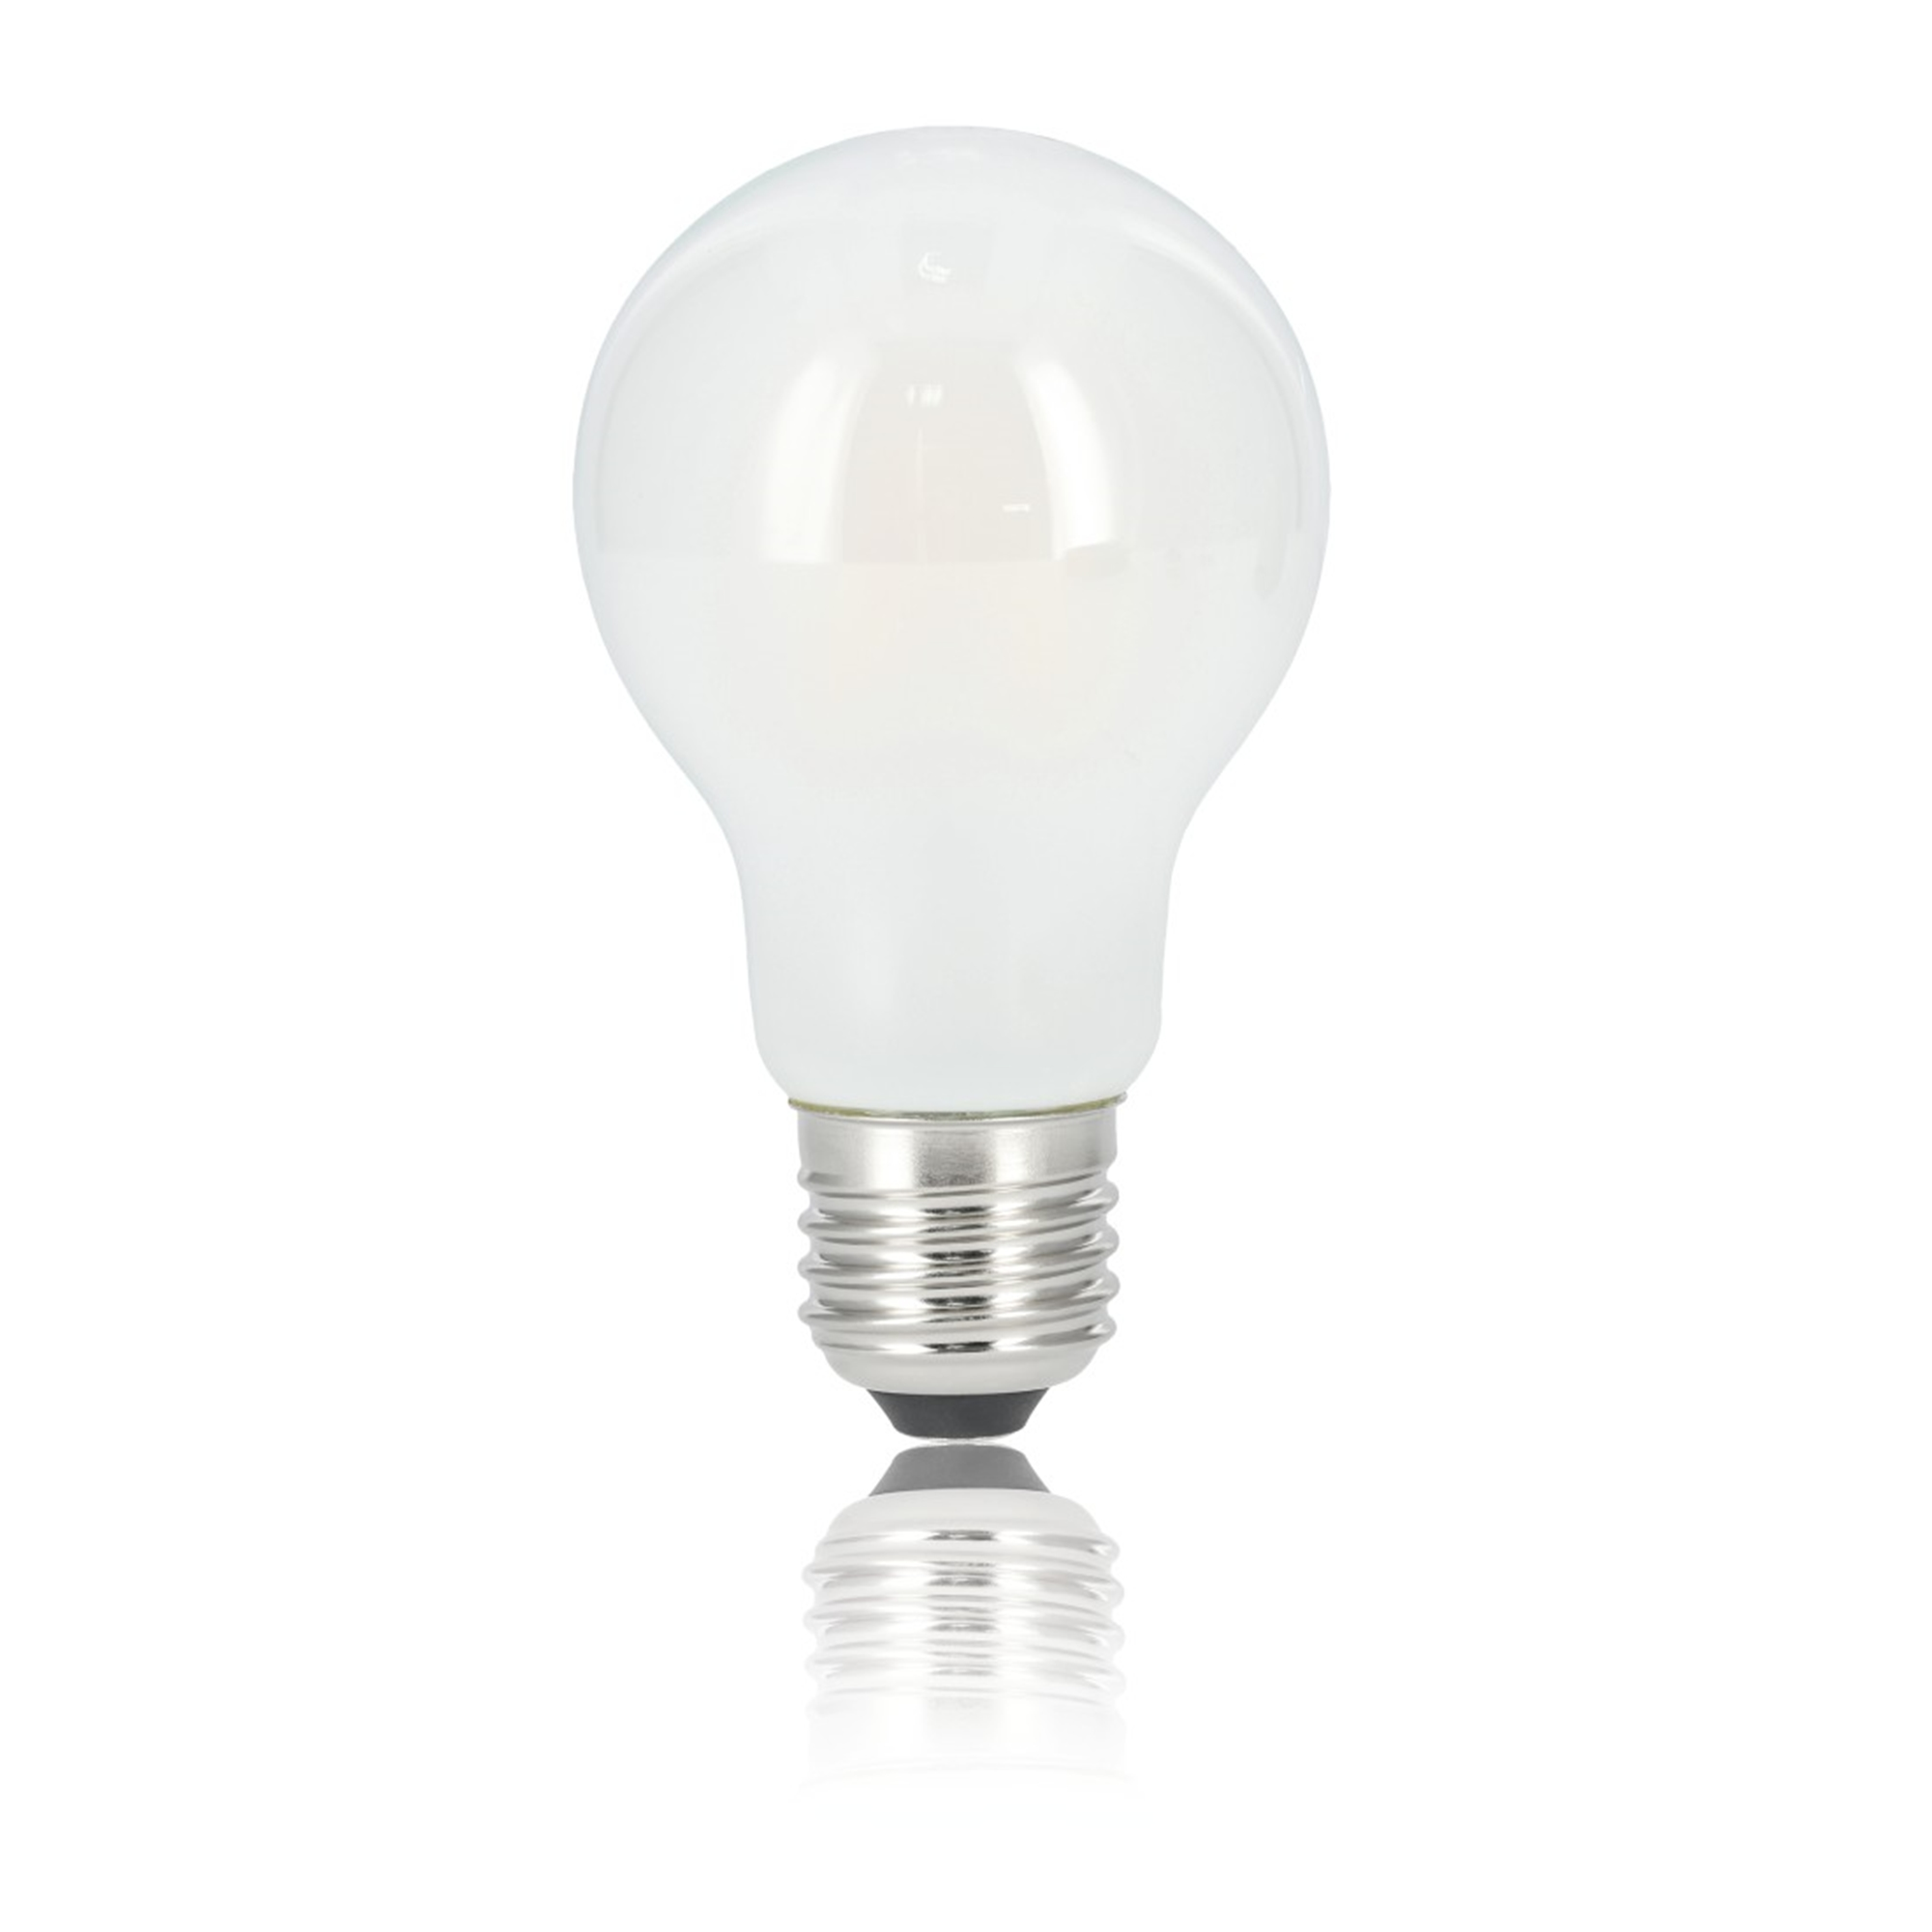 XAVAX E27, 806lm ersetzt Warmweiß 60W LED-Lampe E27